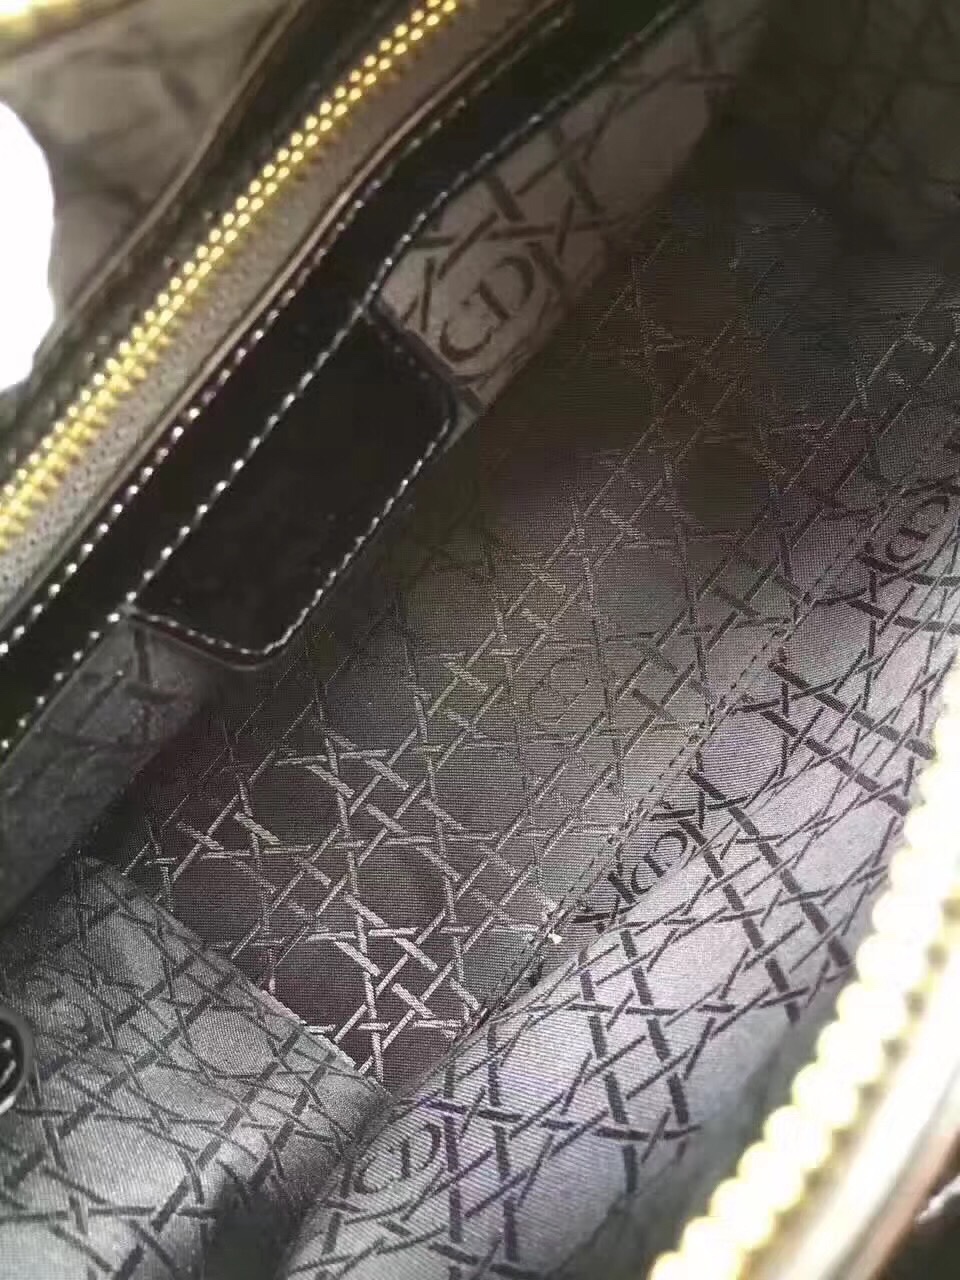 Túi xách Dior Lady siêu cấp - TXDO009